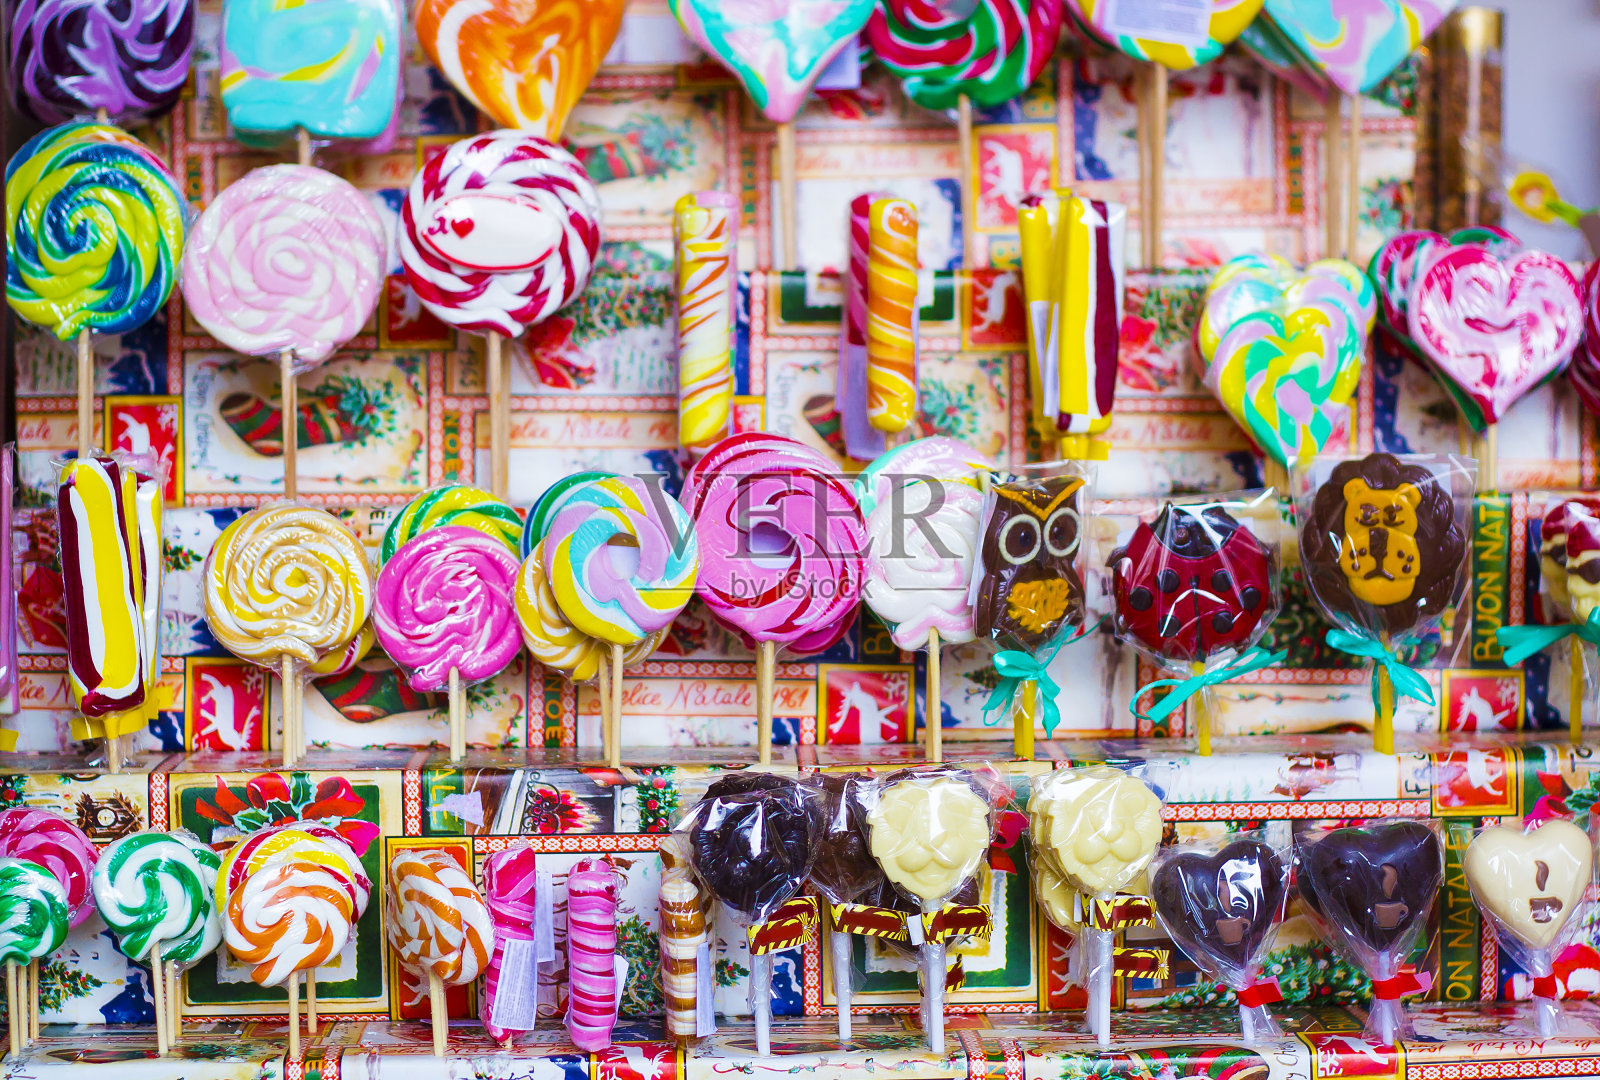 商店橱窗里出售的彩色焦糖棒和巧克力糖果是不错的选择照片摄影图片